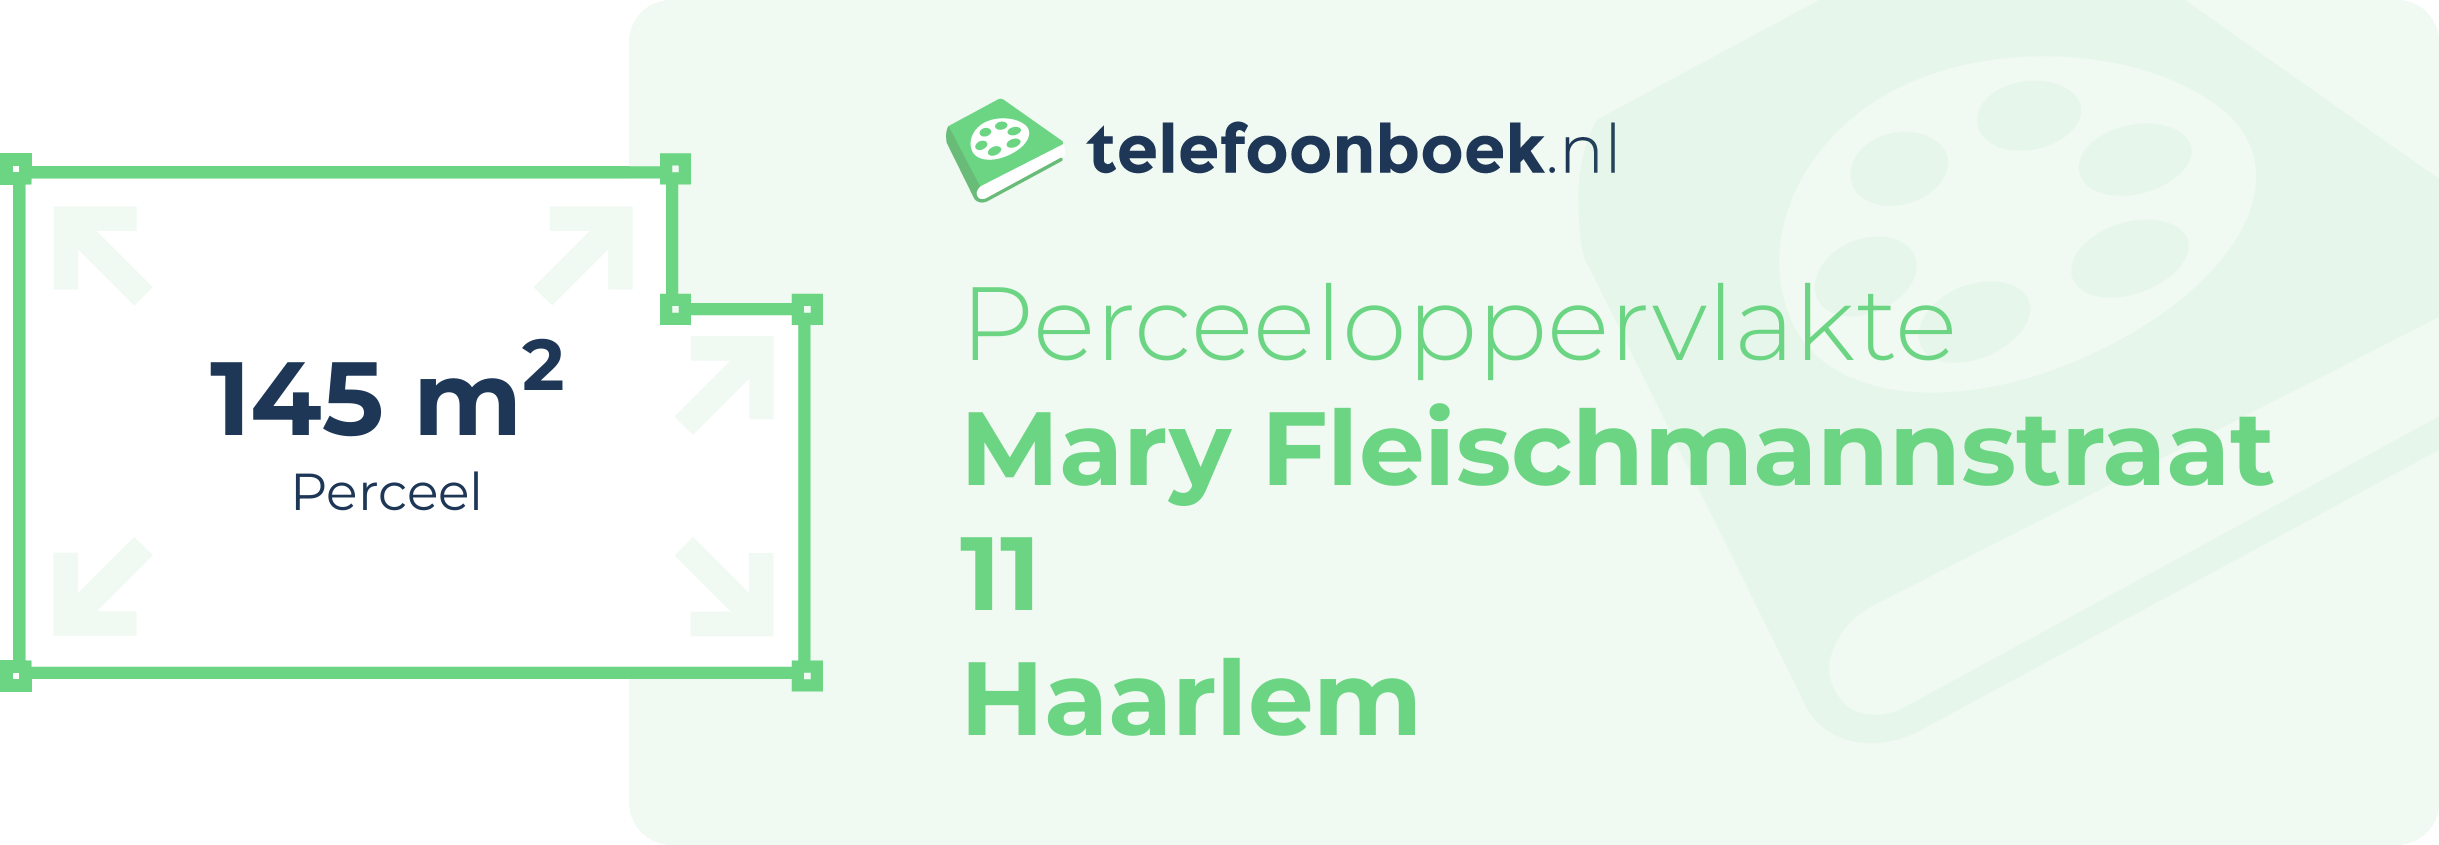 Perceeloppervlakte Mary Fleischmannstraat 11 Haarlem